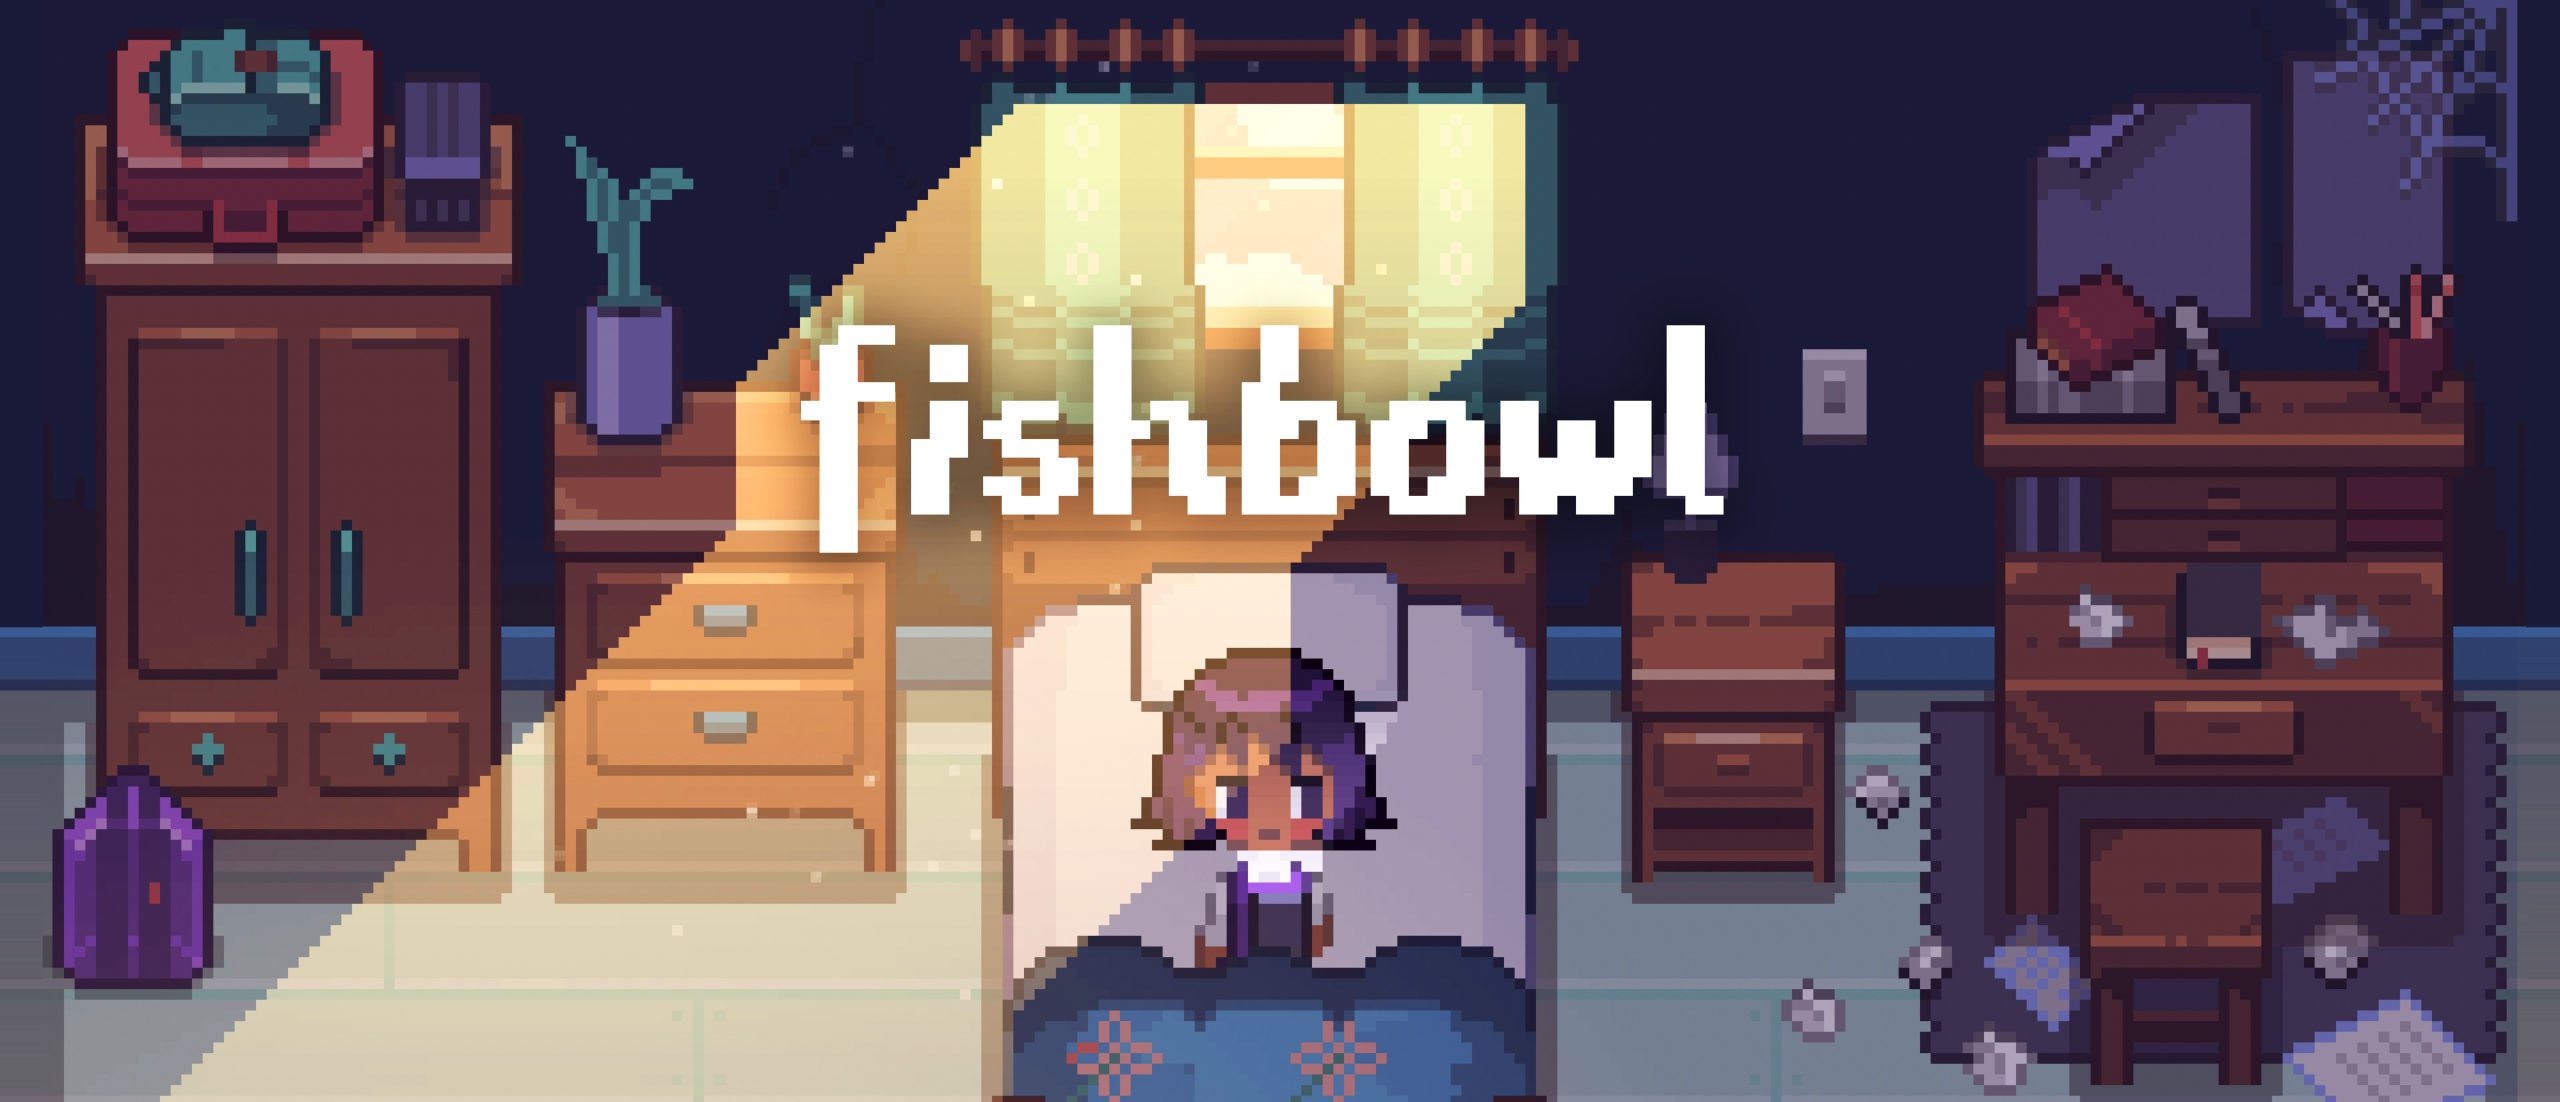 Indie-Game fishbowl